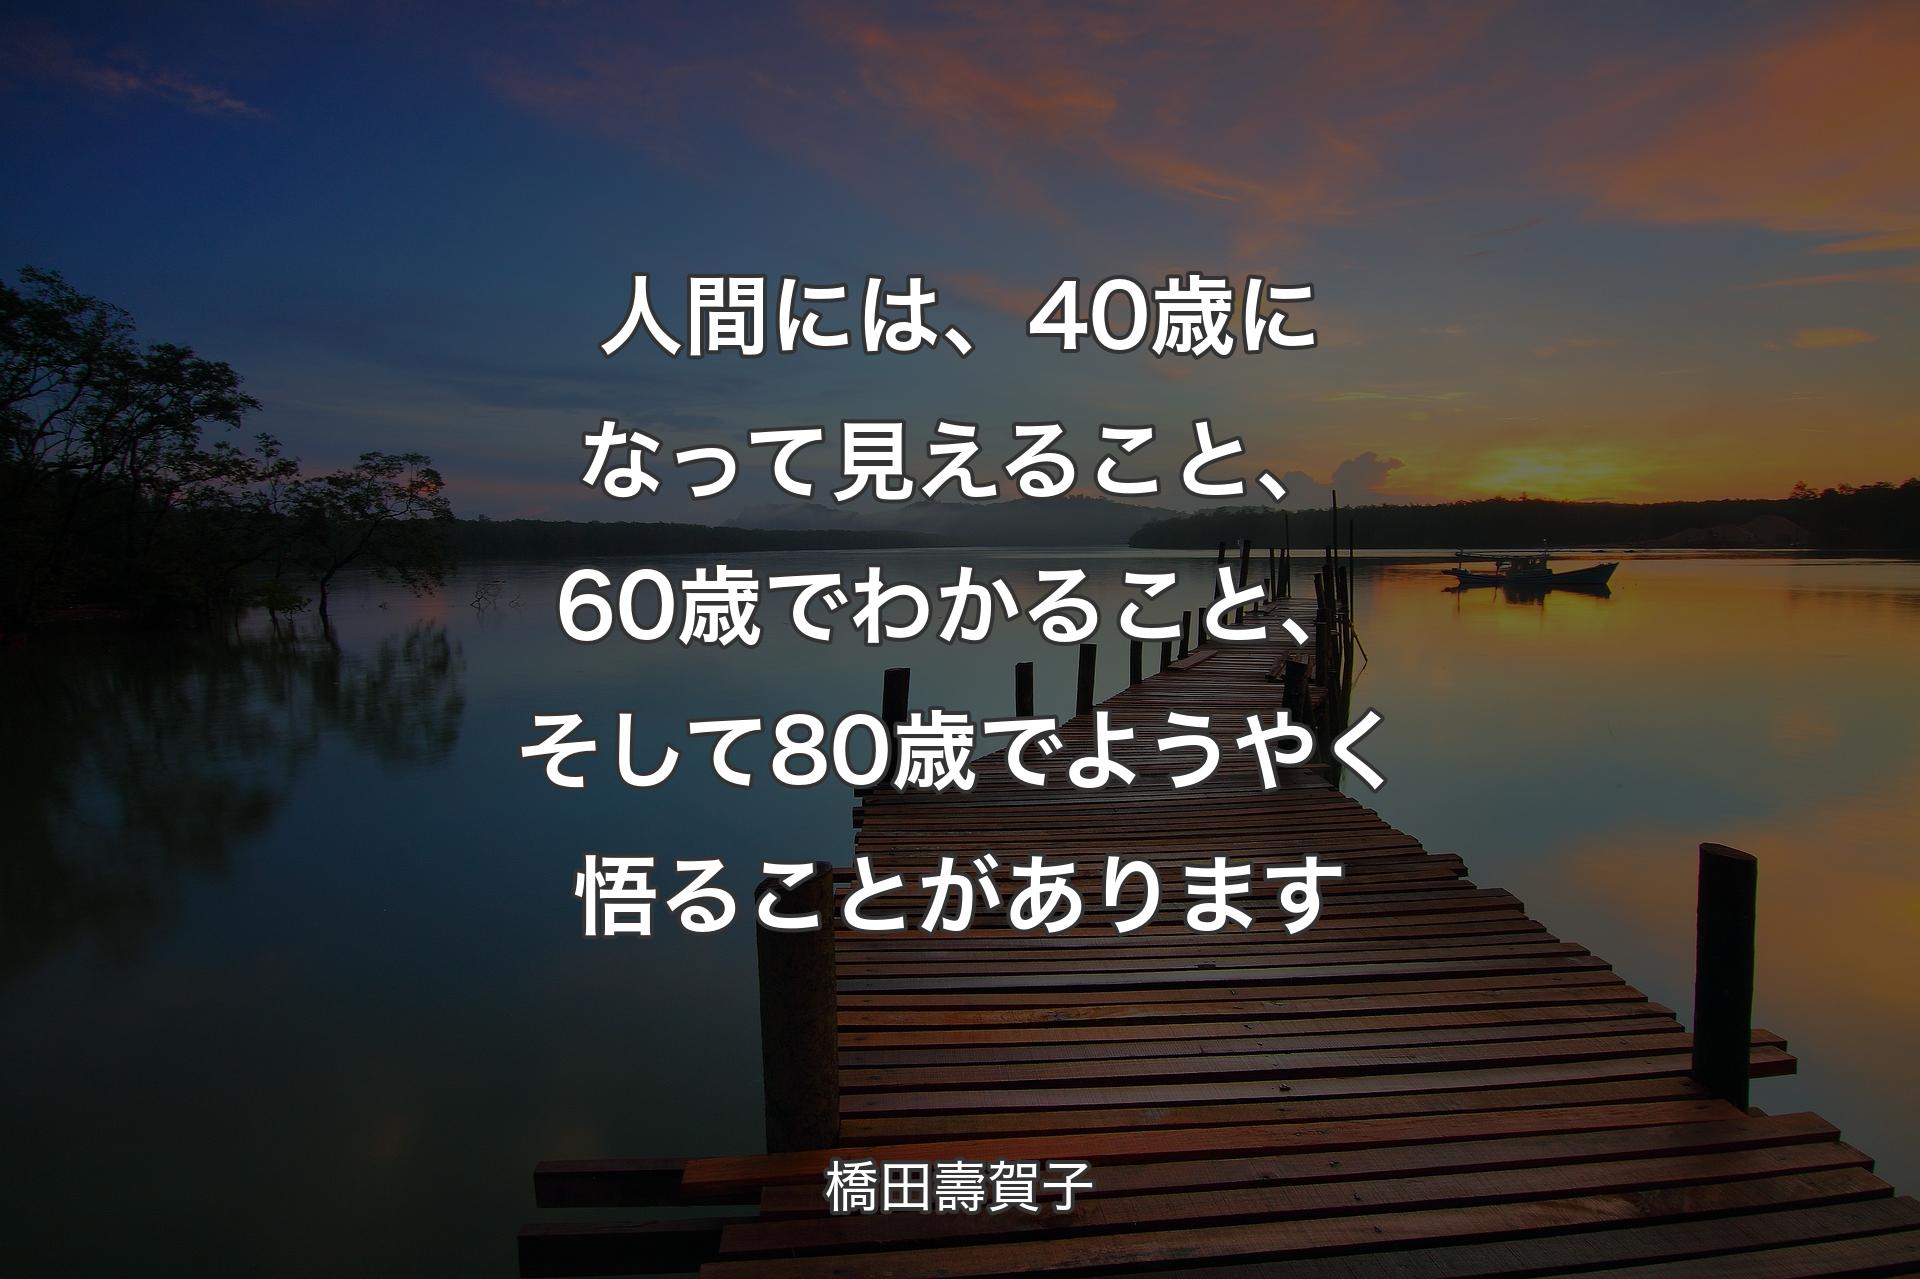 【背景3】人間には、40歳に��なって見えること、60歳でわかること、そして80歳でようやく悟ることがあります - 橋田壽賀子